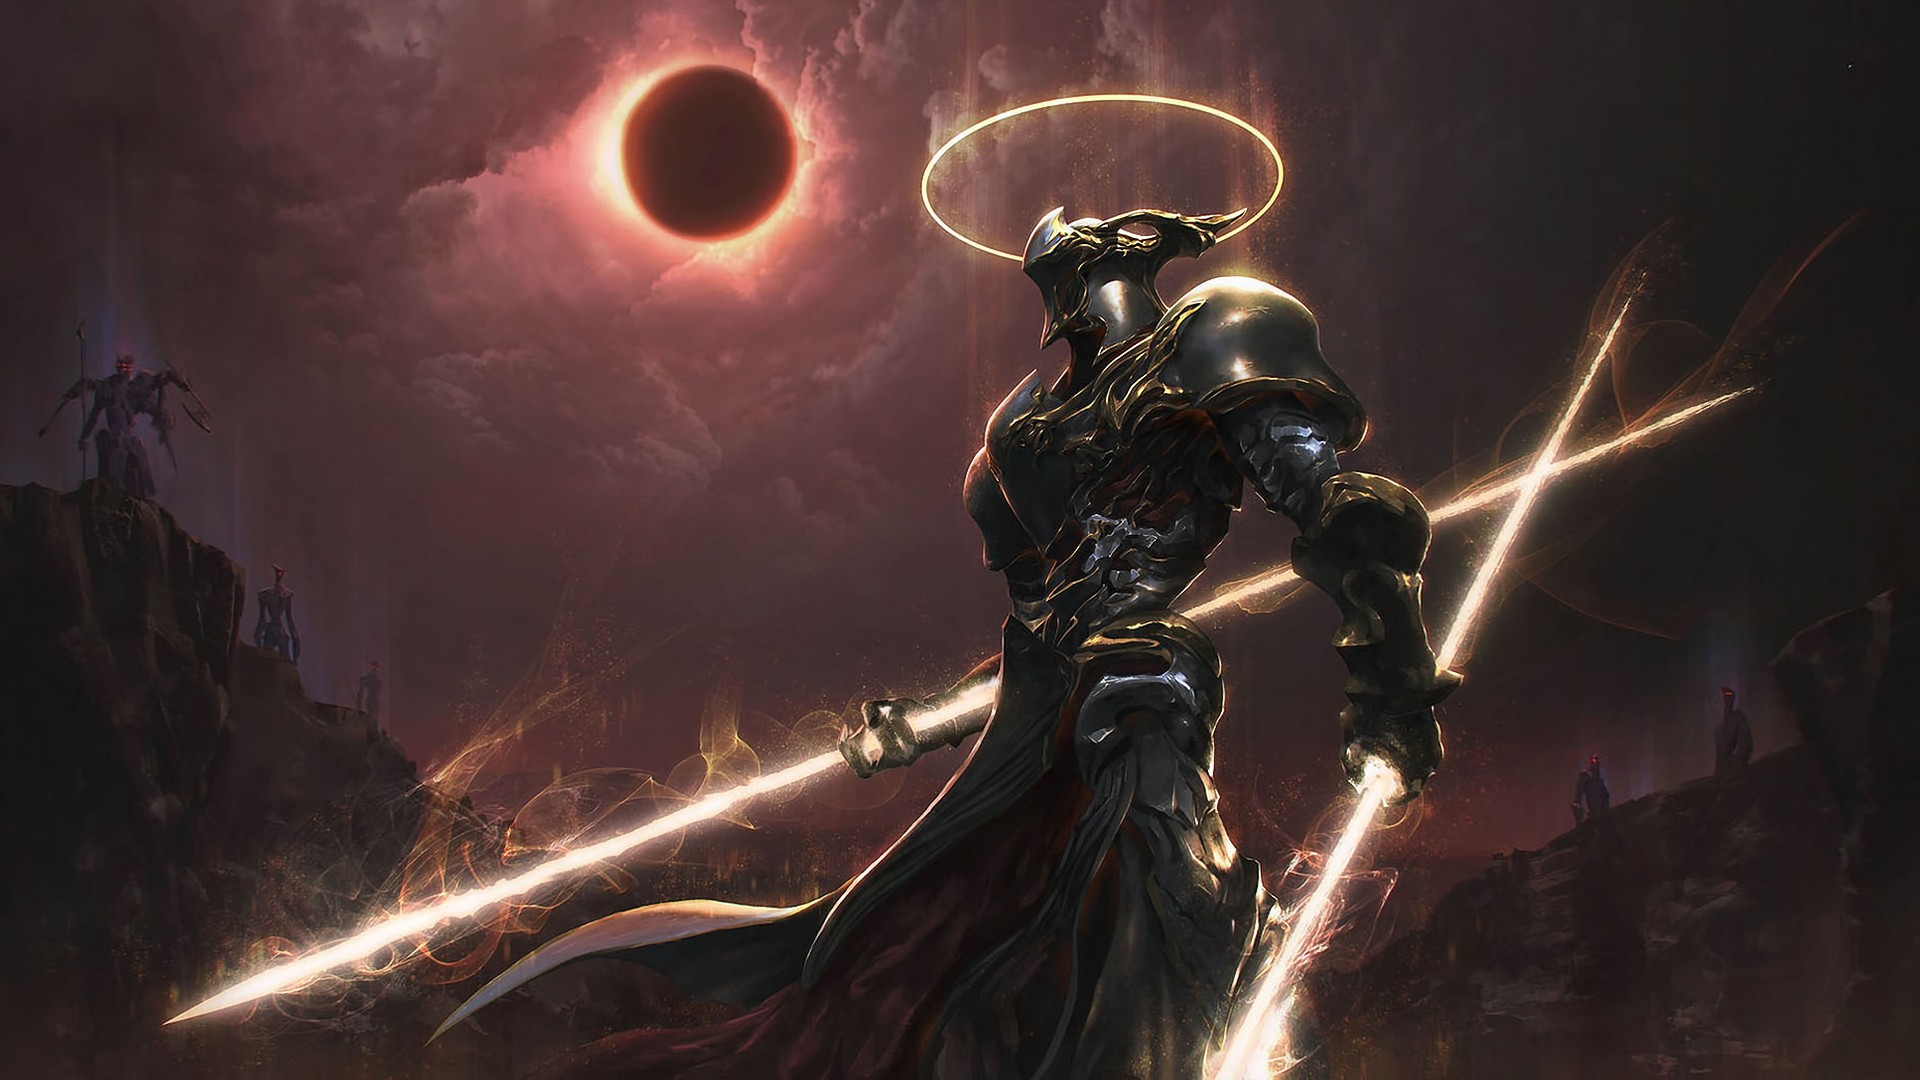 General 1920x1080 warrior artwork fantasy art digital art cyborg solar eclipse demon apocalyptic knight